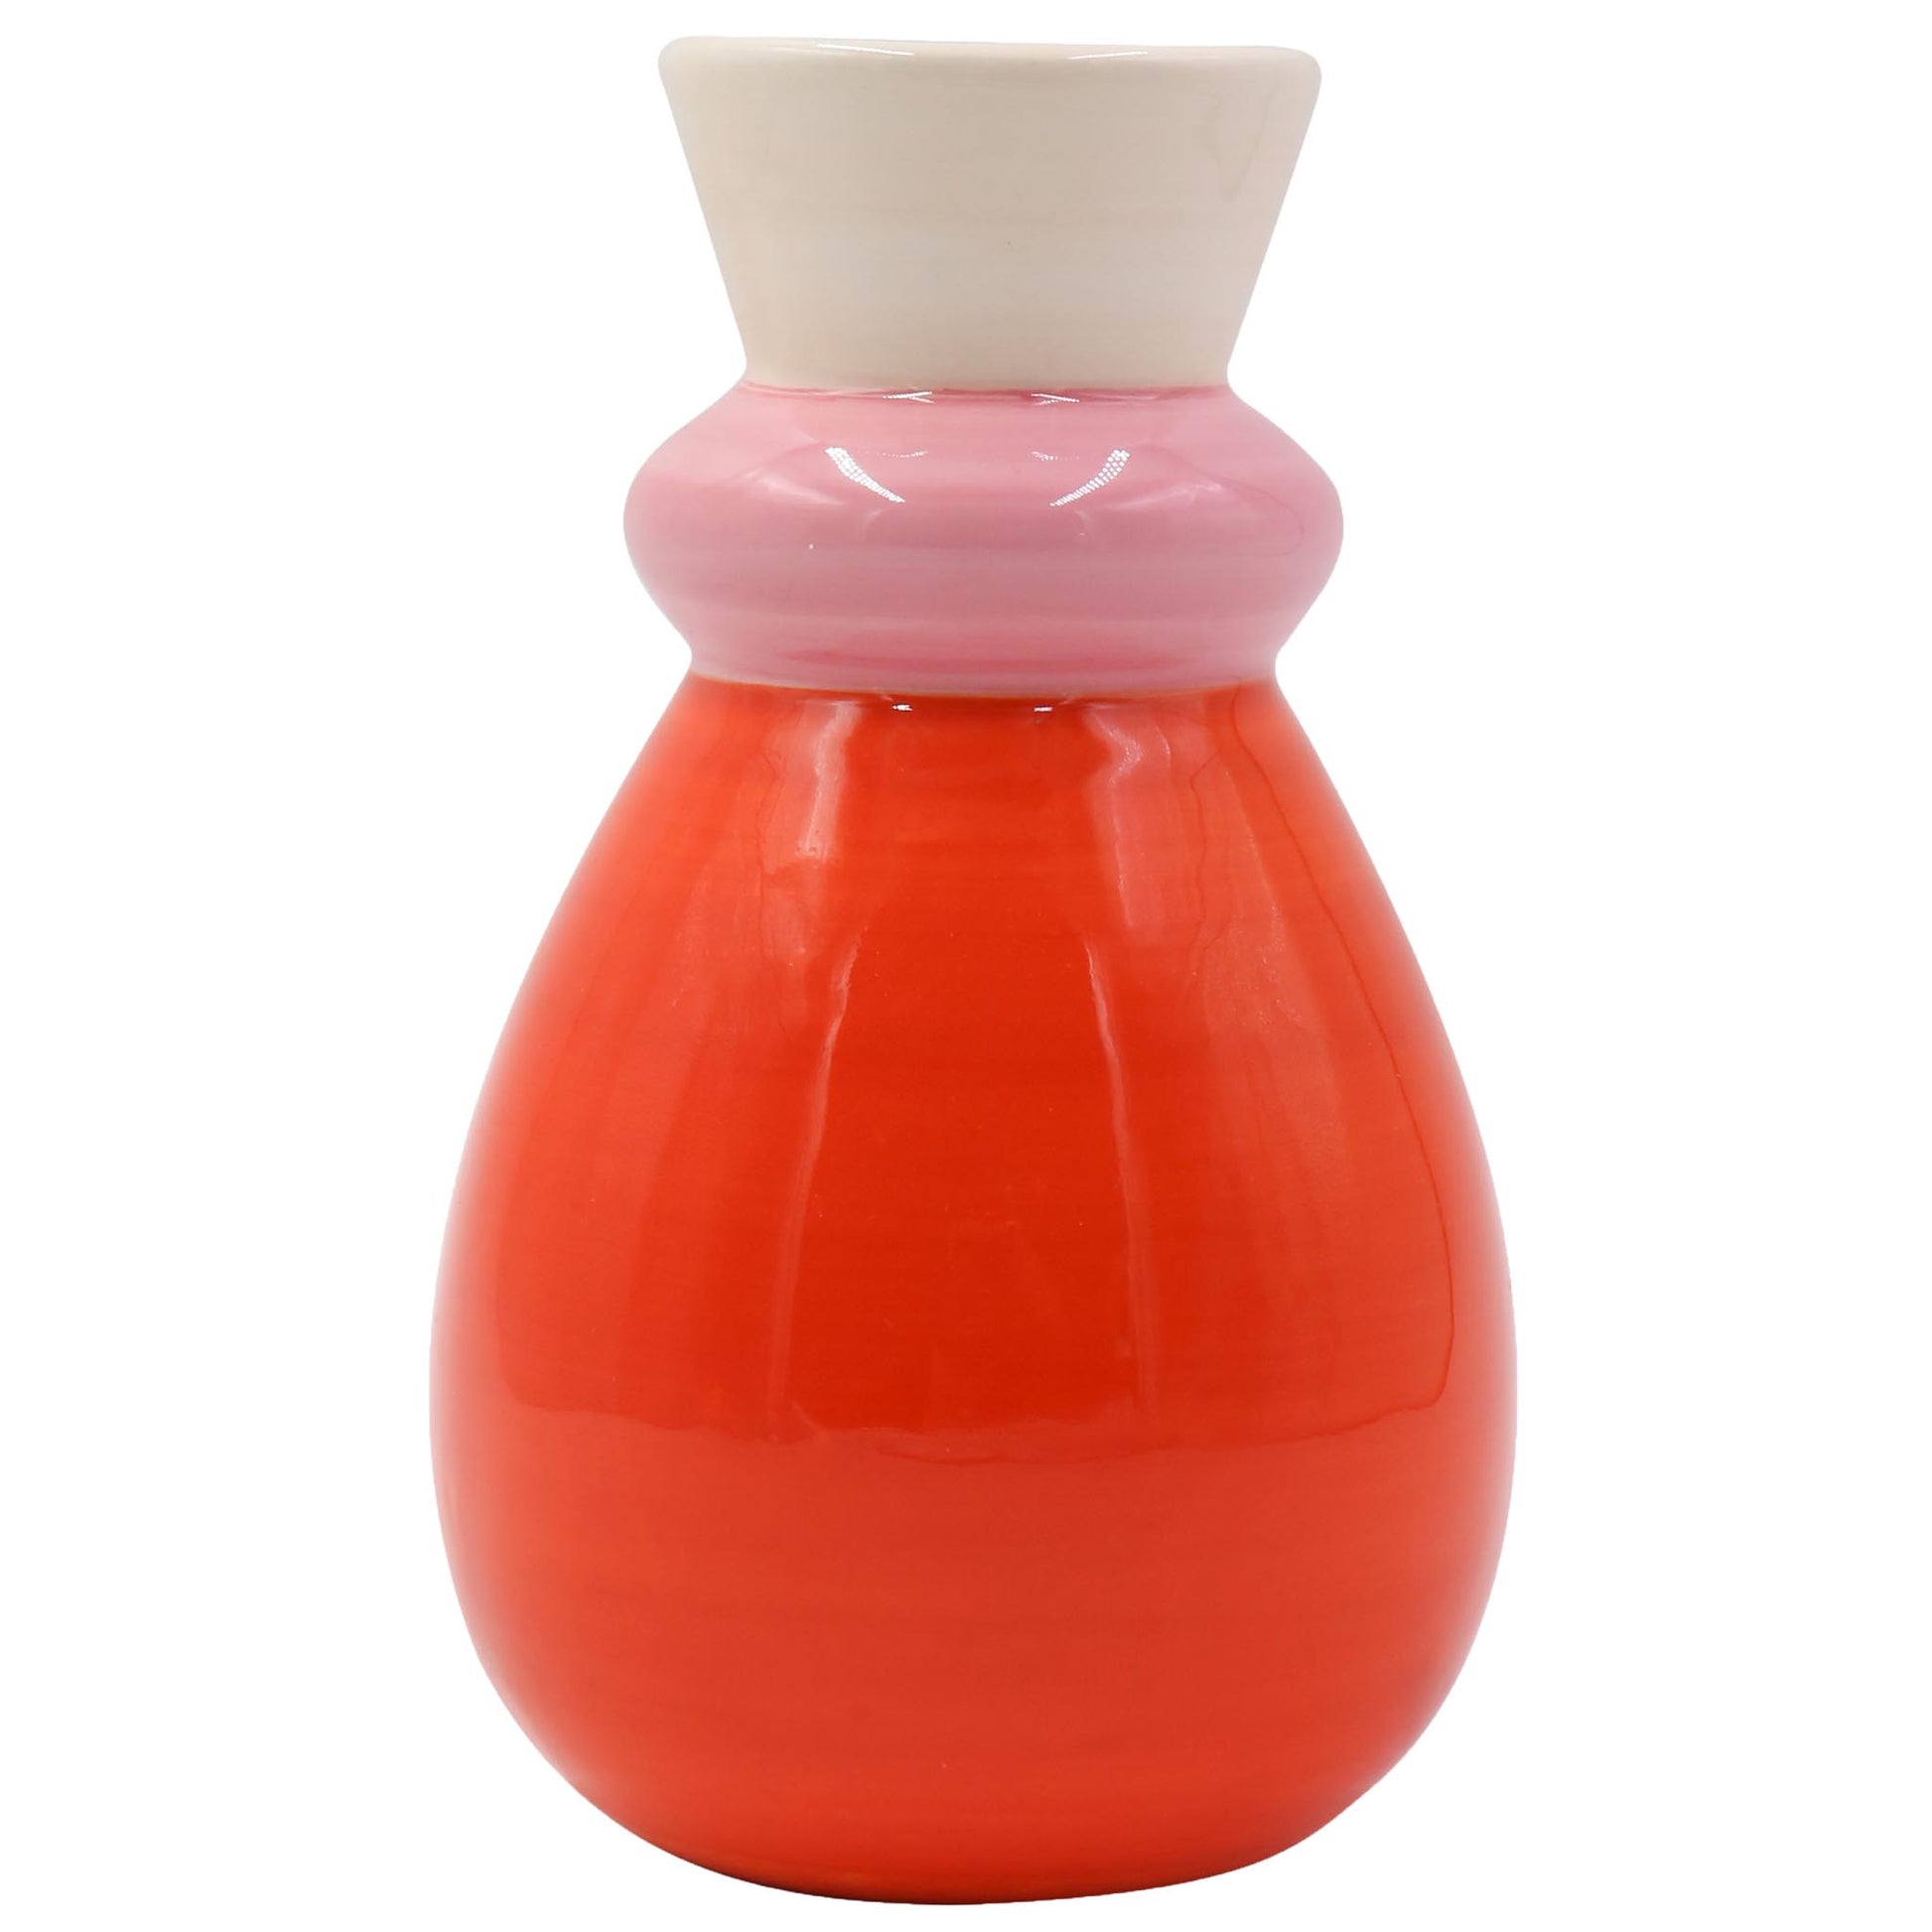 Carolina Vase, a lovely pink white and orange vase with a round base